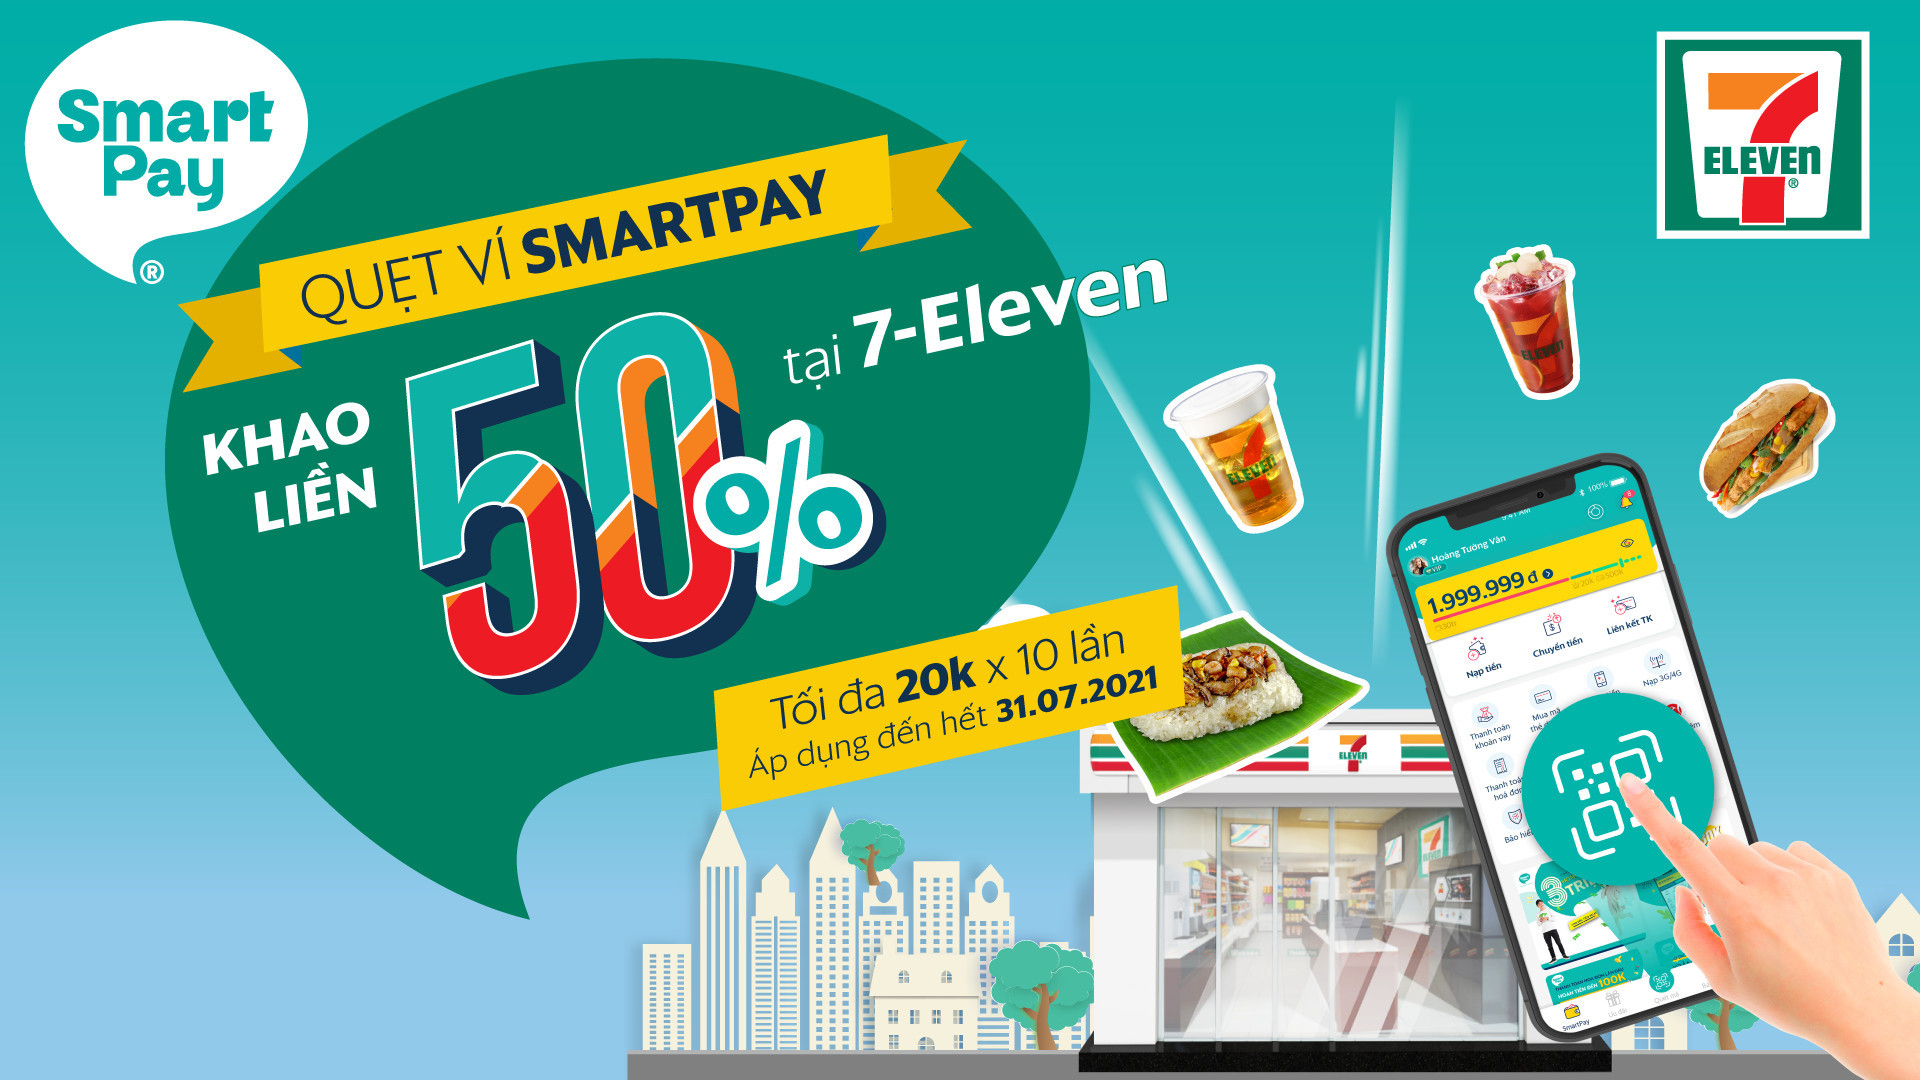 Quẹt ví SmartPay khao liền 50% tại 7-Eleven | 7-Eleven Việt Nam